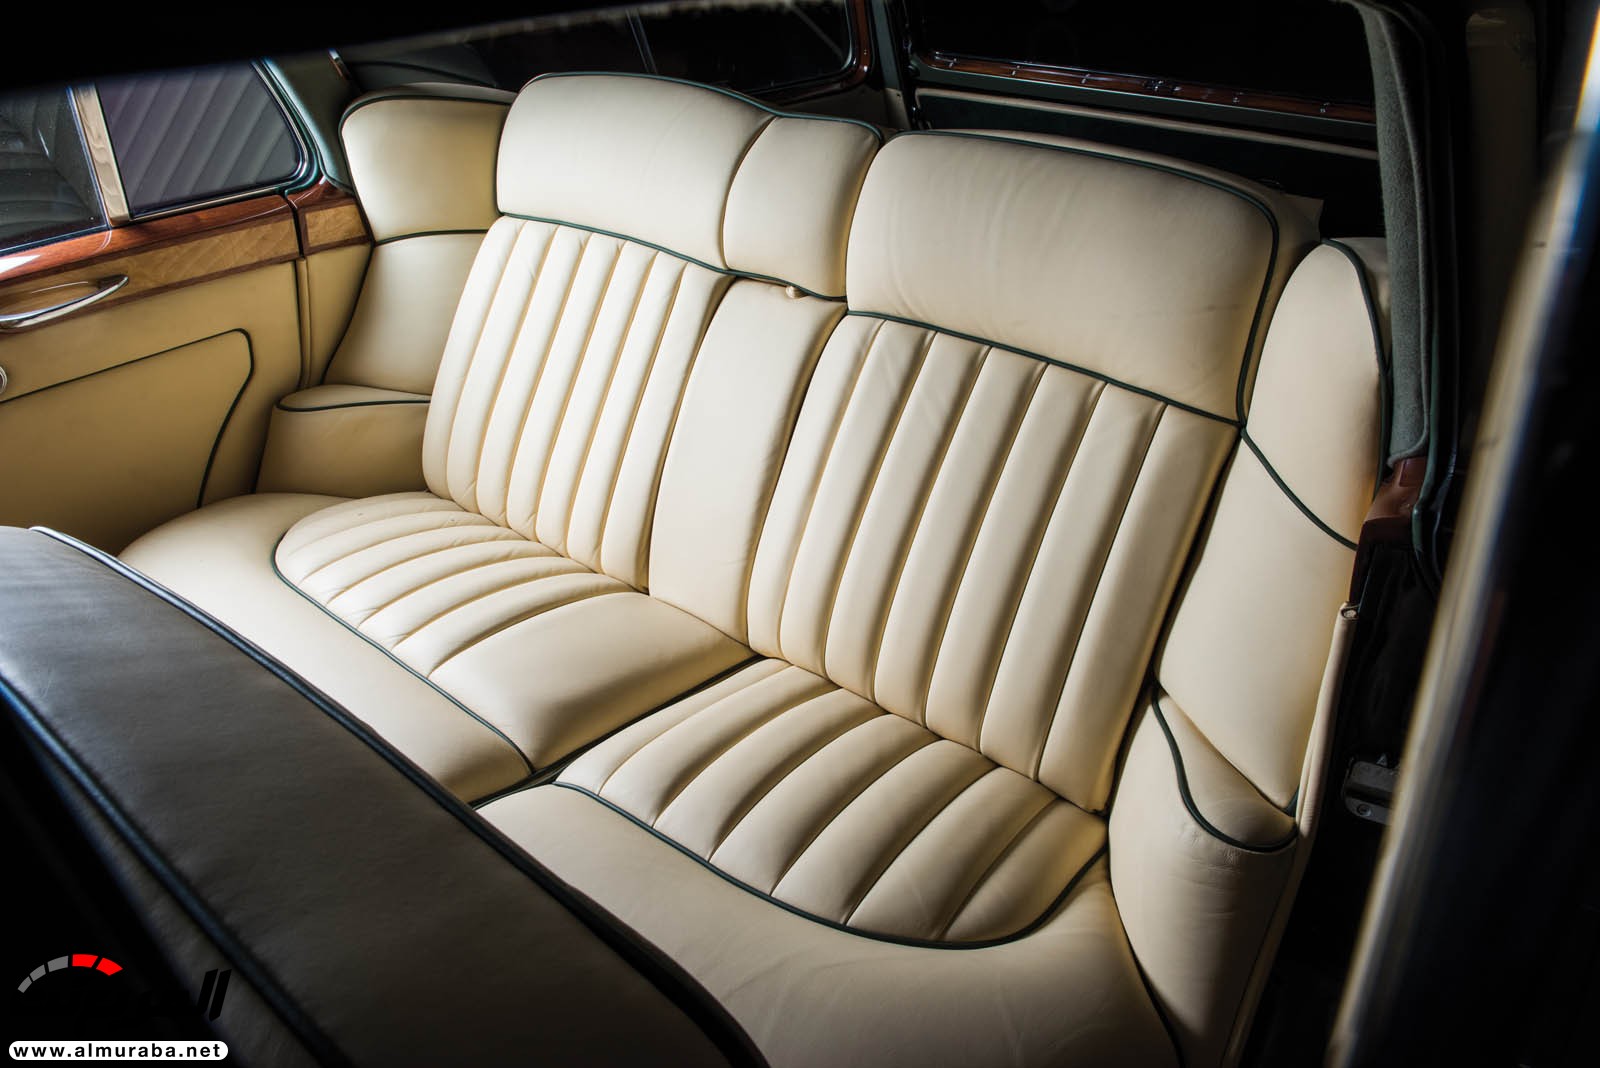 "رولز رويس" سيلفر كلاود 1959 ذات هيكلة الواجن تتوجه لتباع في مزاد عالمي Rolls-Royce Silver Cloud 79